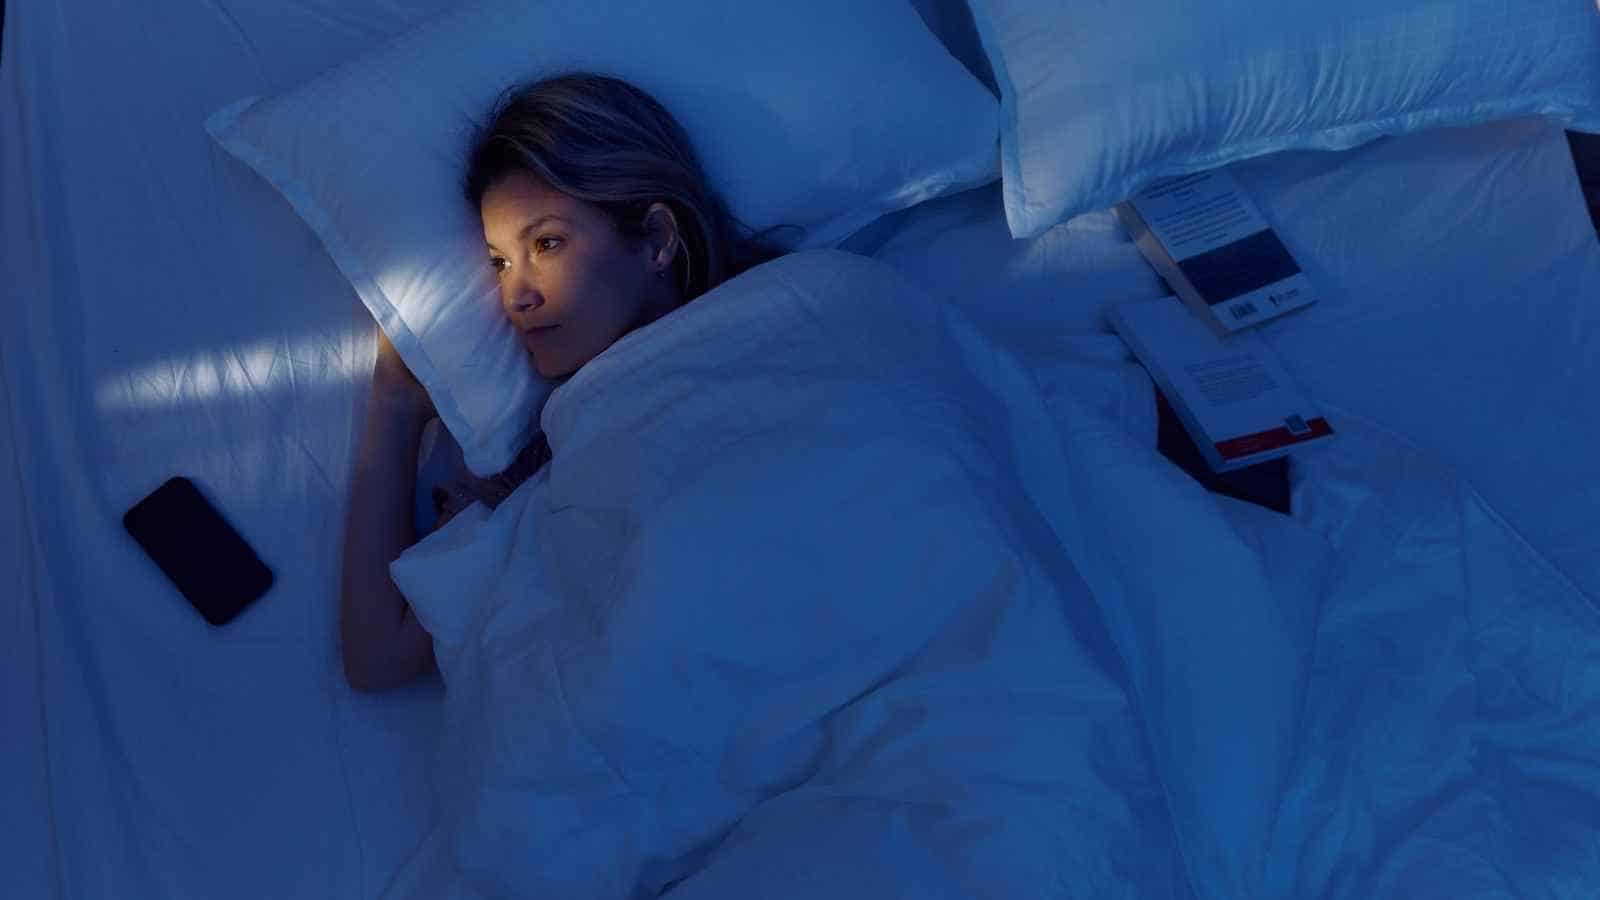 La privazione del sonno comporta numerose conseguenze negative, tra cui la percezione distorta dell'età